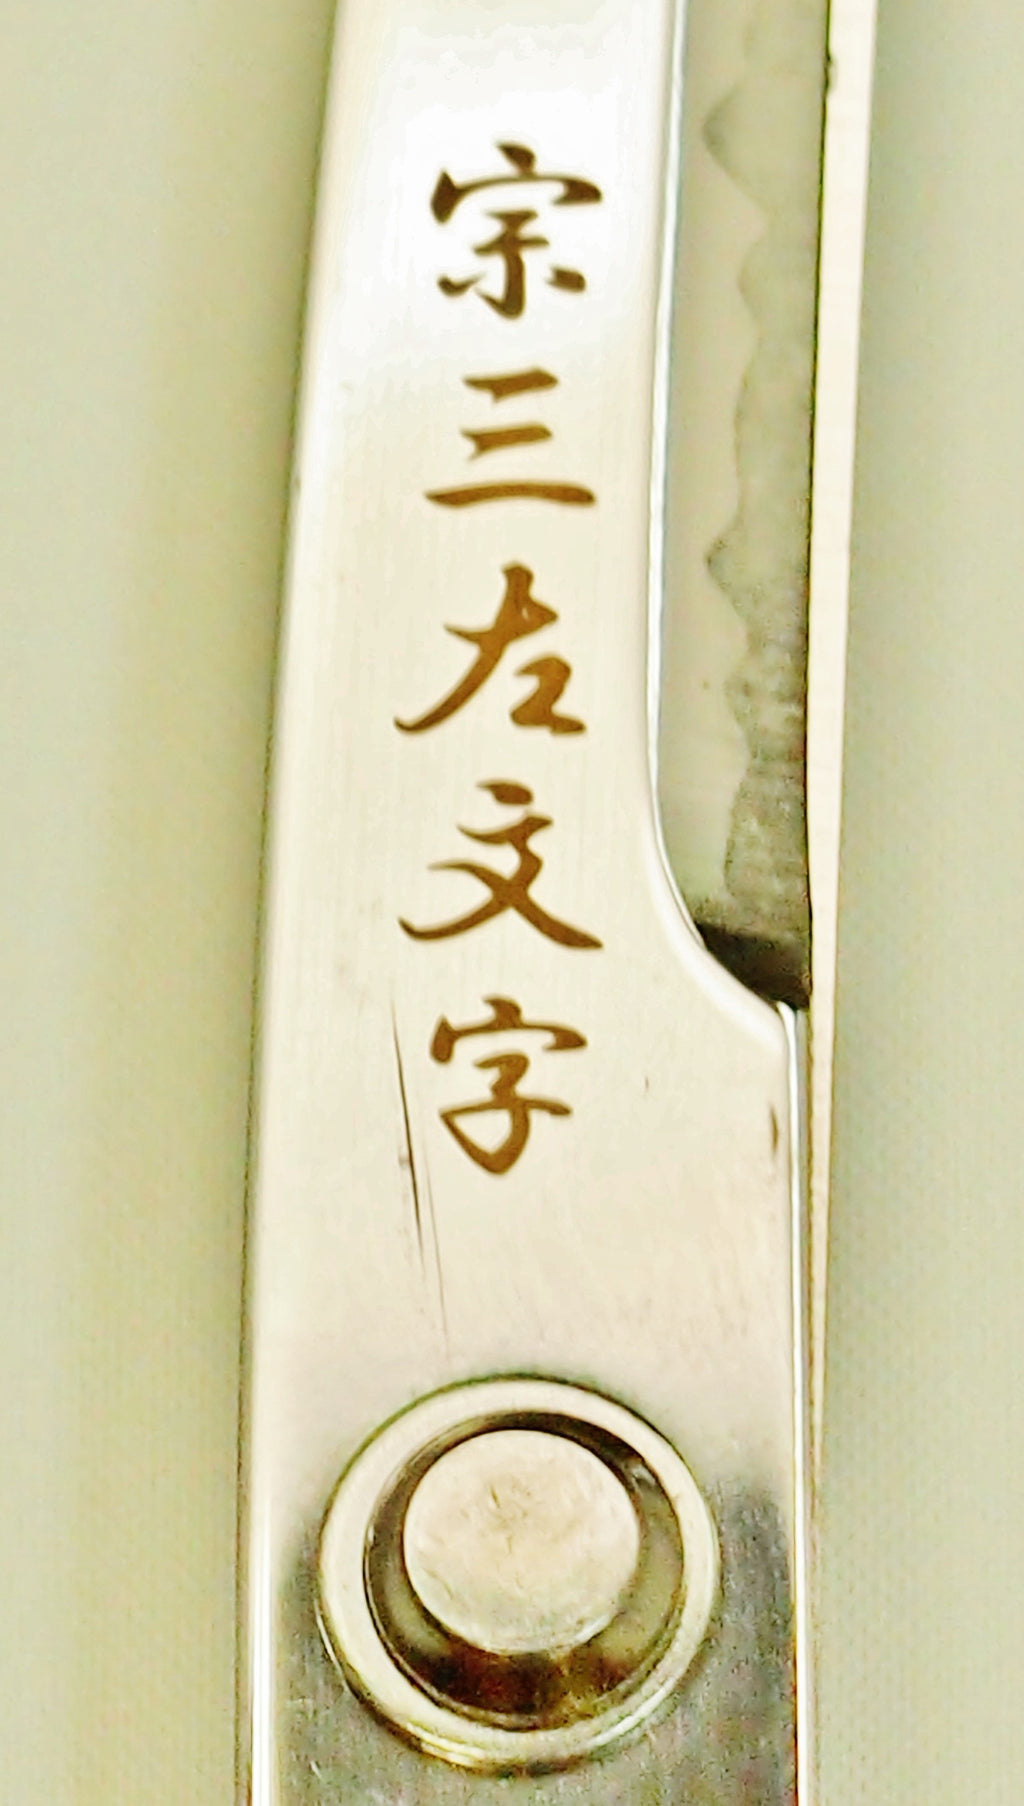 関の刃物 日本刀鋏 織田信長 宗三左文字 鞘付き インテリアはさみ 日本製ハサミ